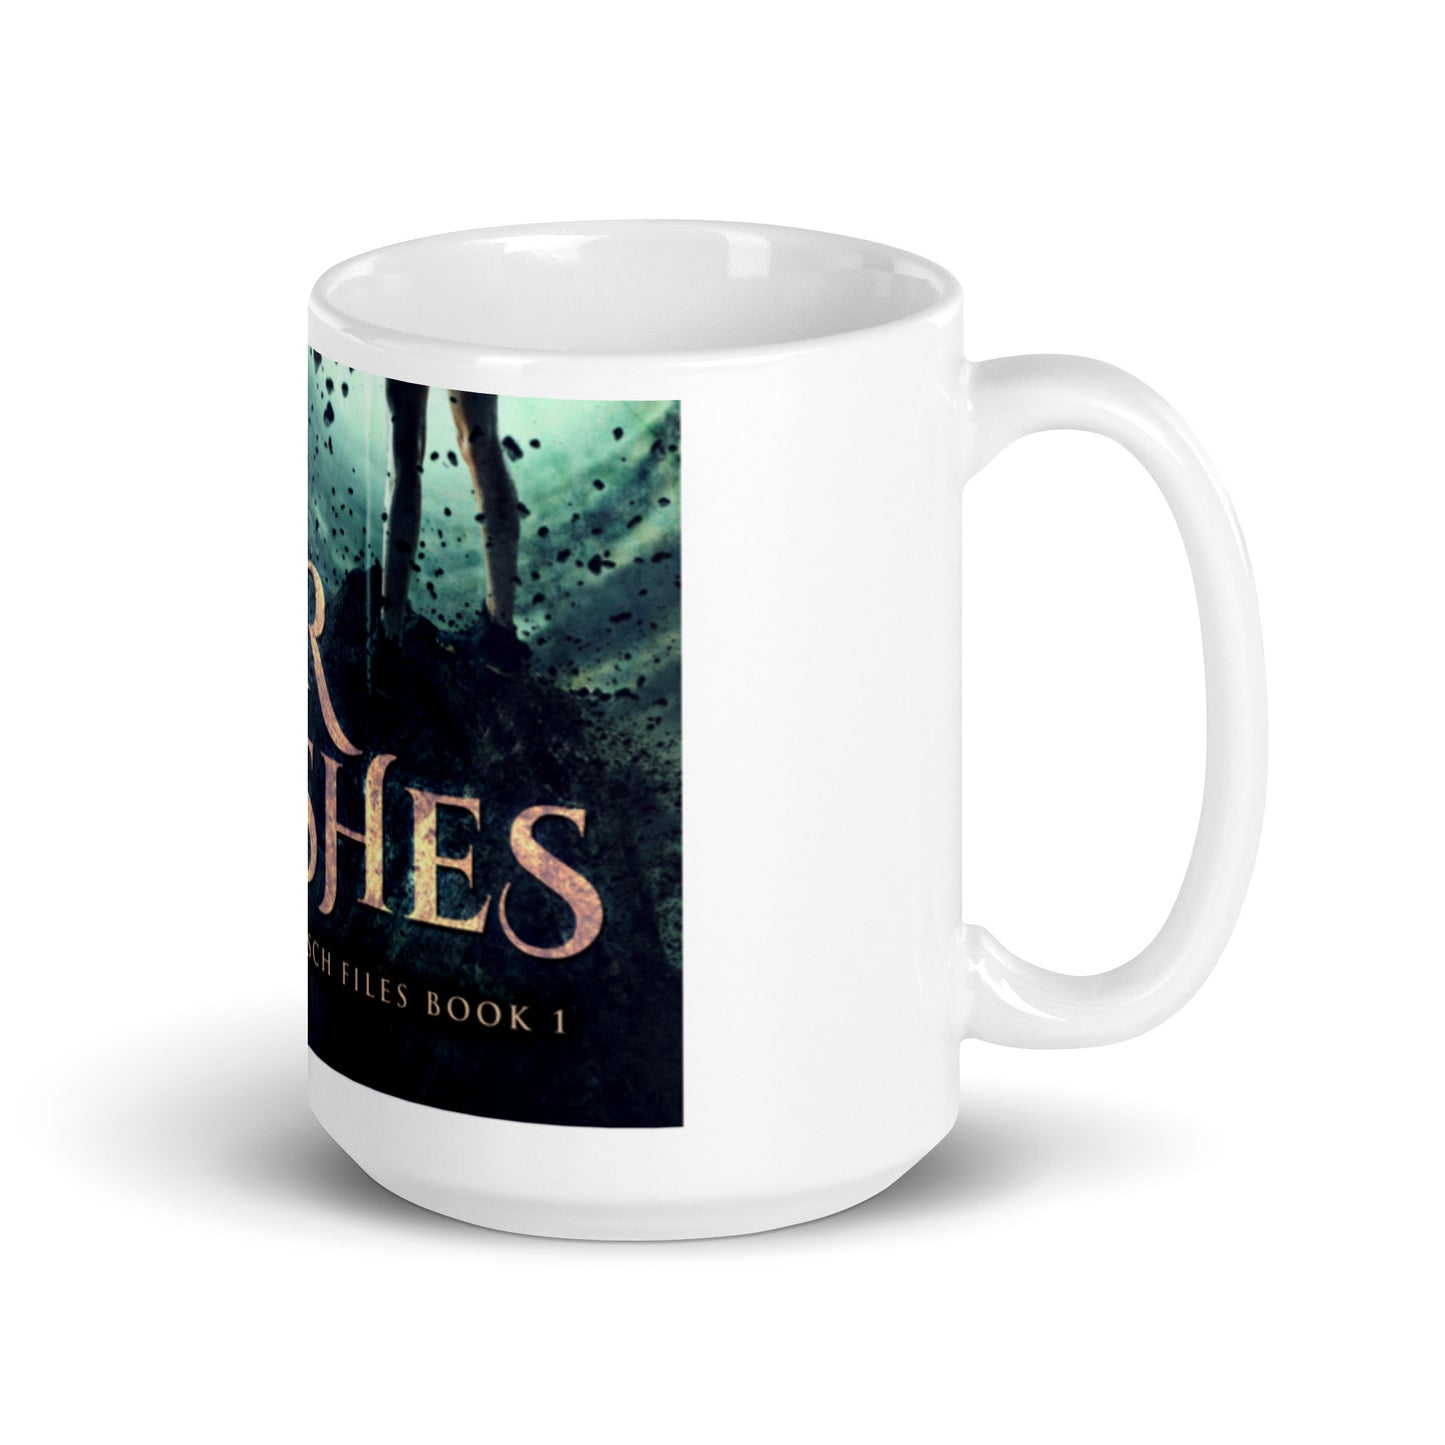 Heir of Ashes - White Coffee Mug